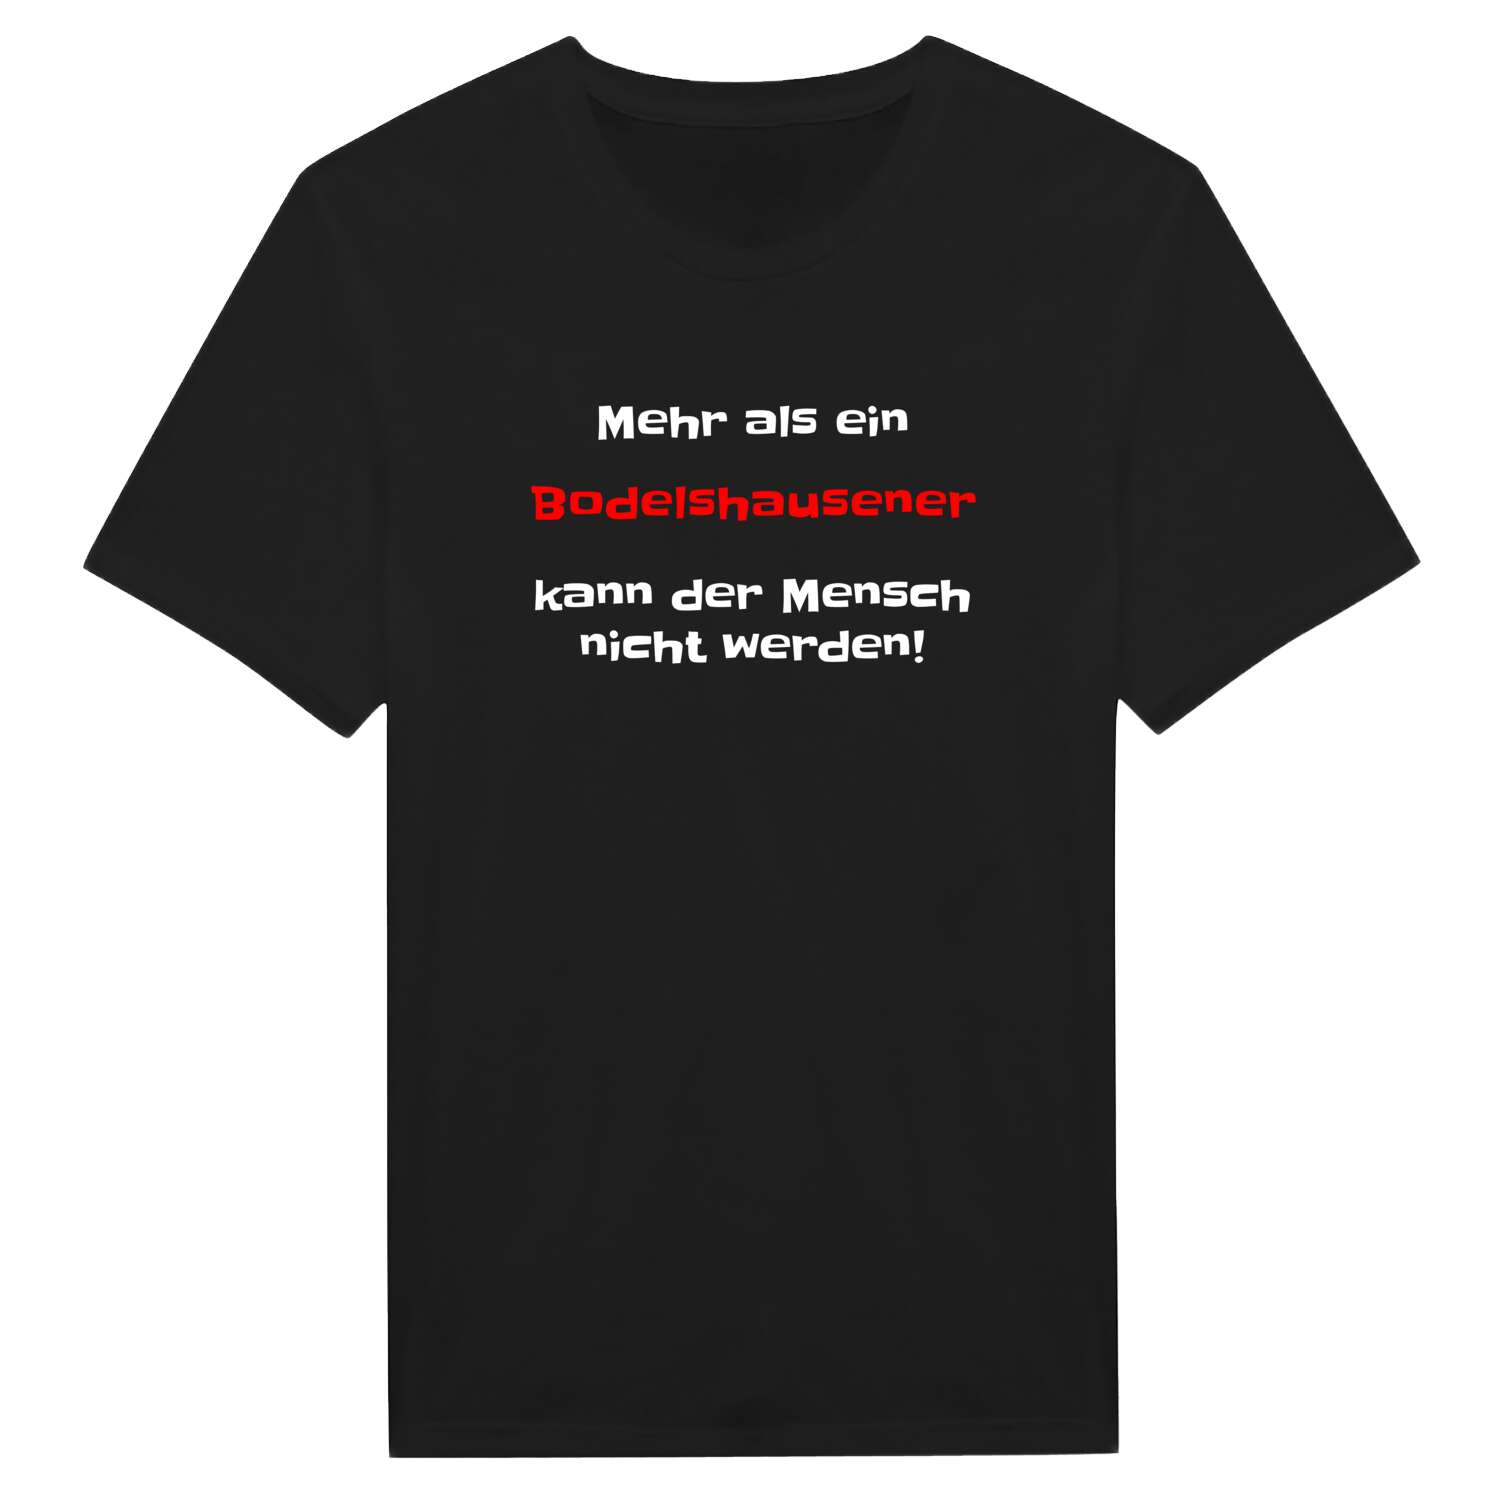 Bodelshausen T-Shirt »Mehr als ein«